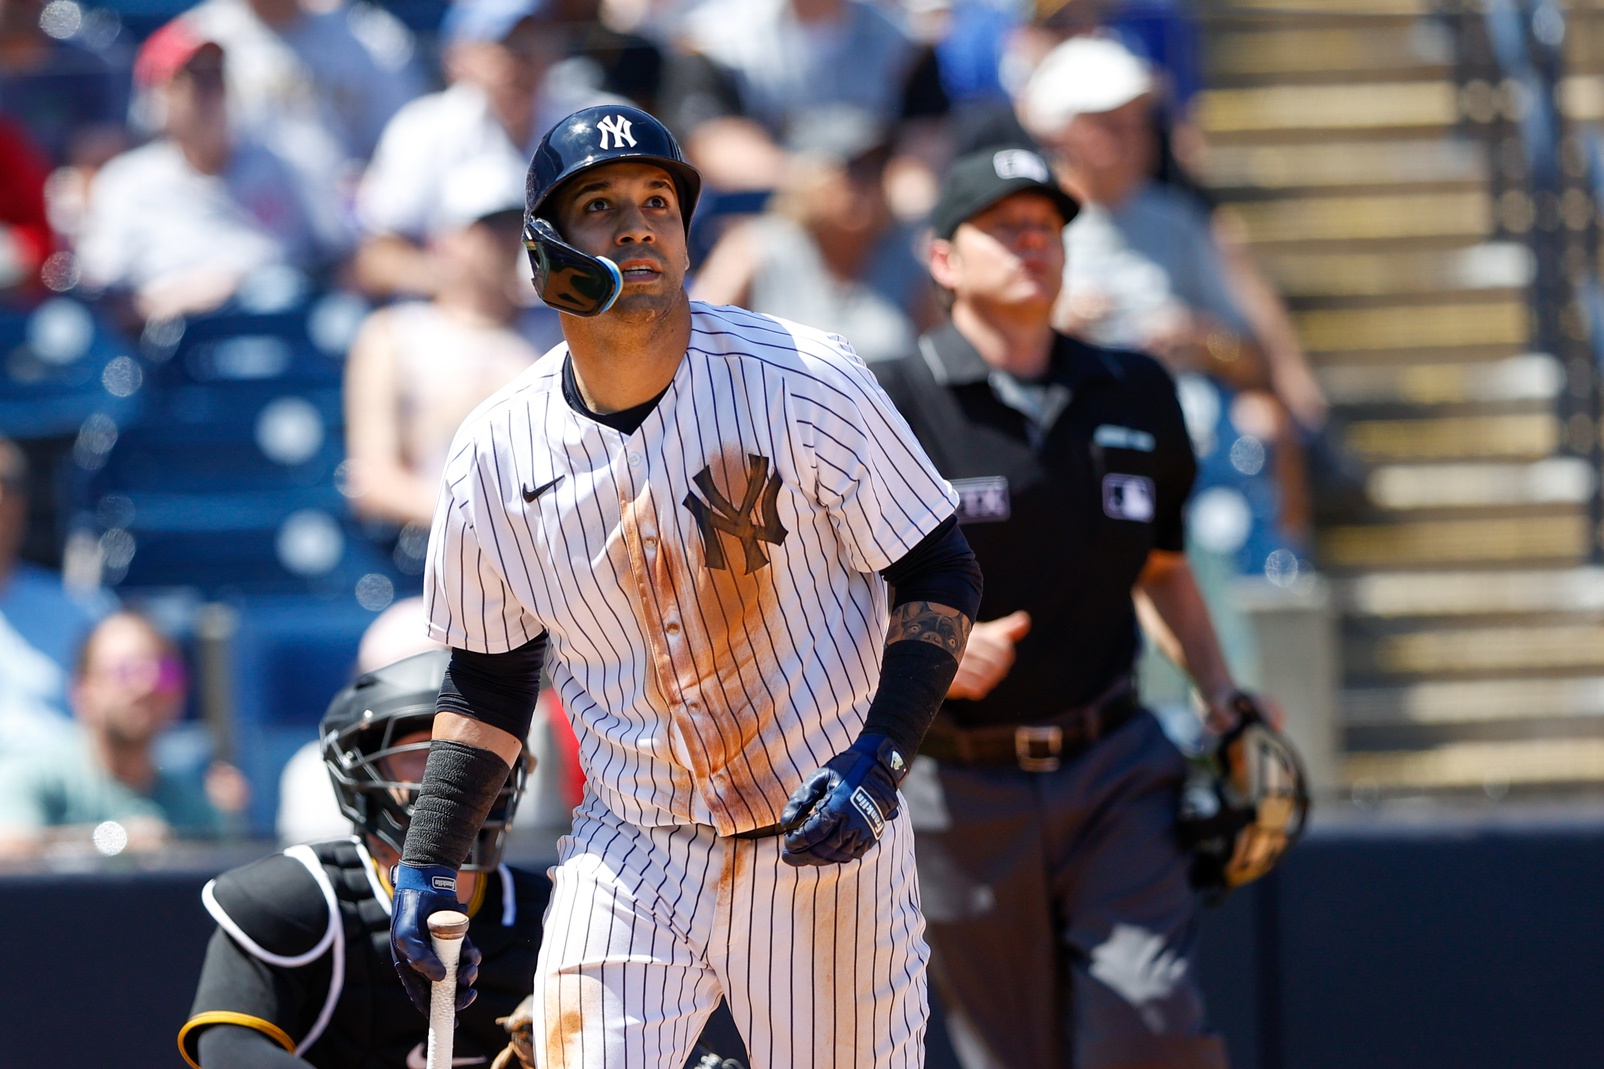 Yankees' Isiah Kiner-Falefa impresses with glove, bat